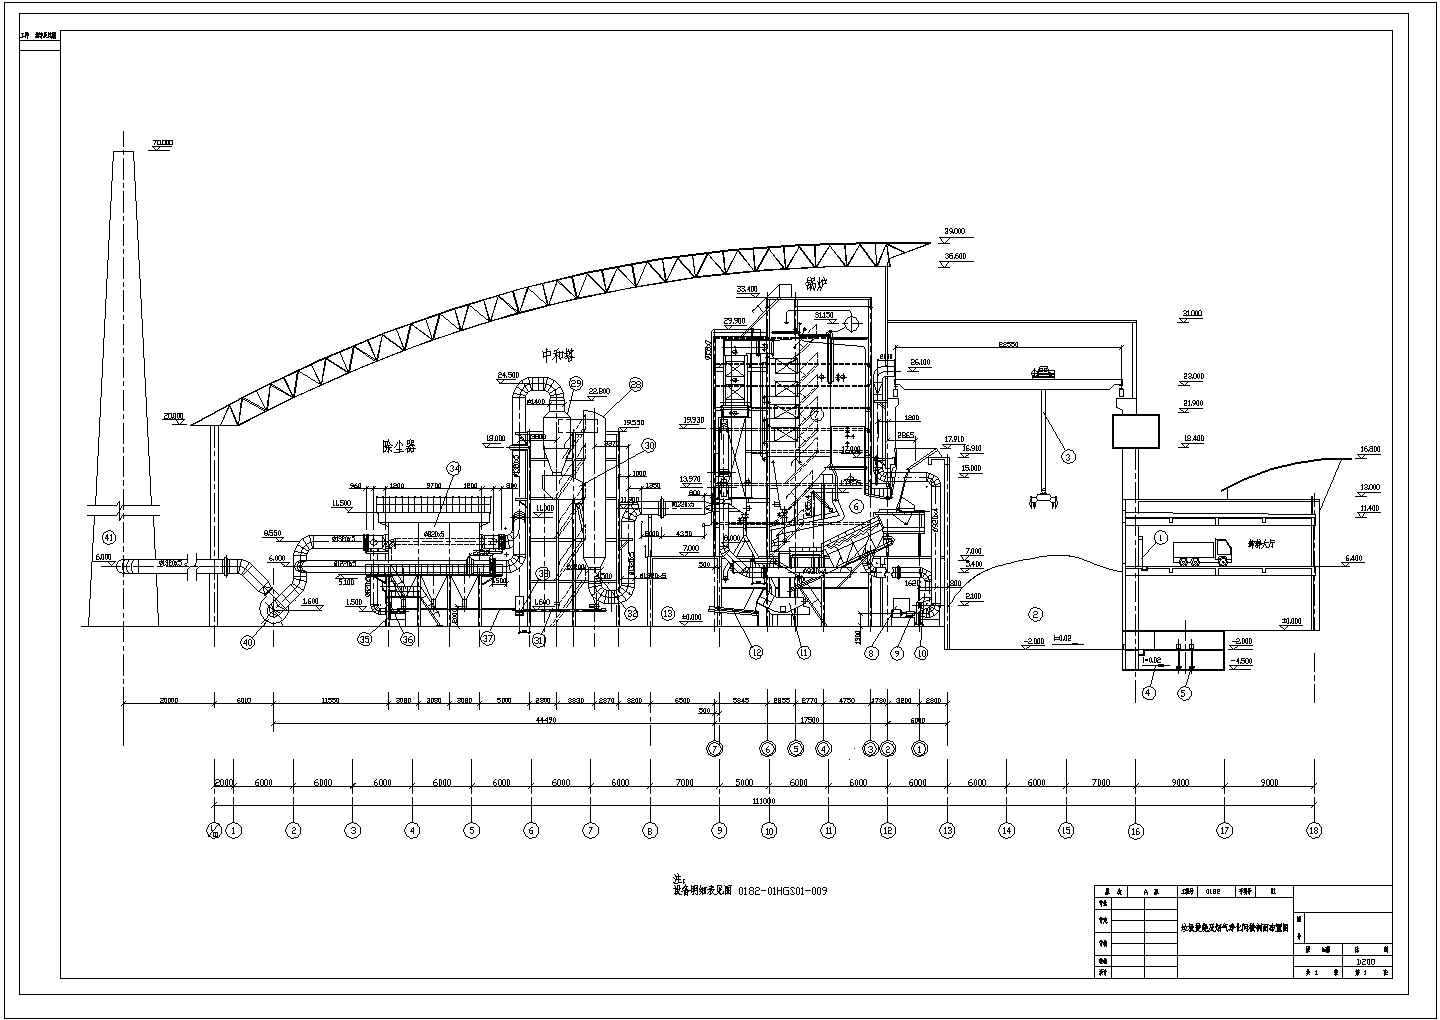 江苏某垃圾焚烧发电厂工艺CAD环保设计流程图设备纵剖图